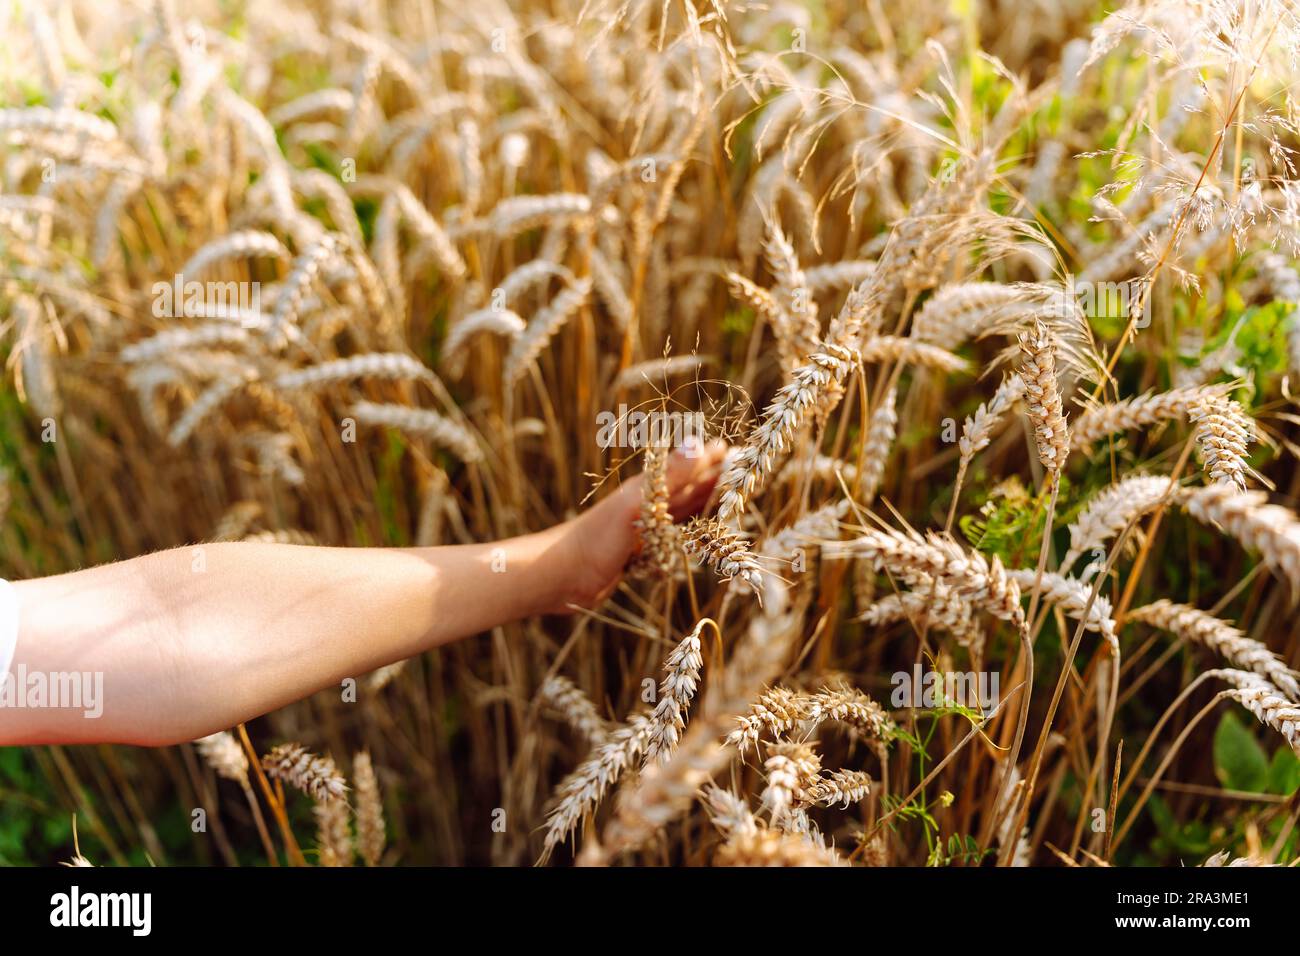 Die Hand eines Kindes berührt Maiskolben auf einem Weizenfeld Stockfoto